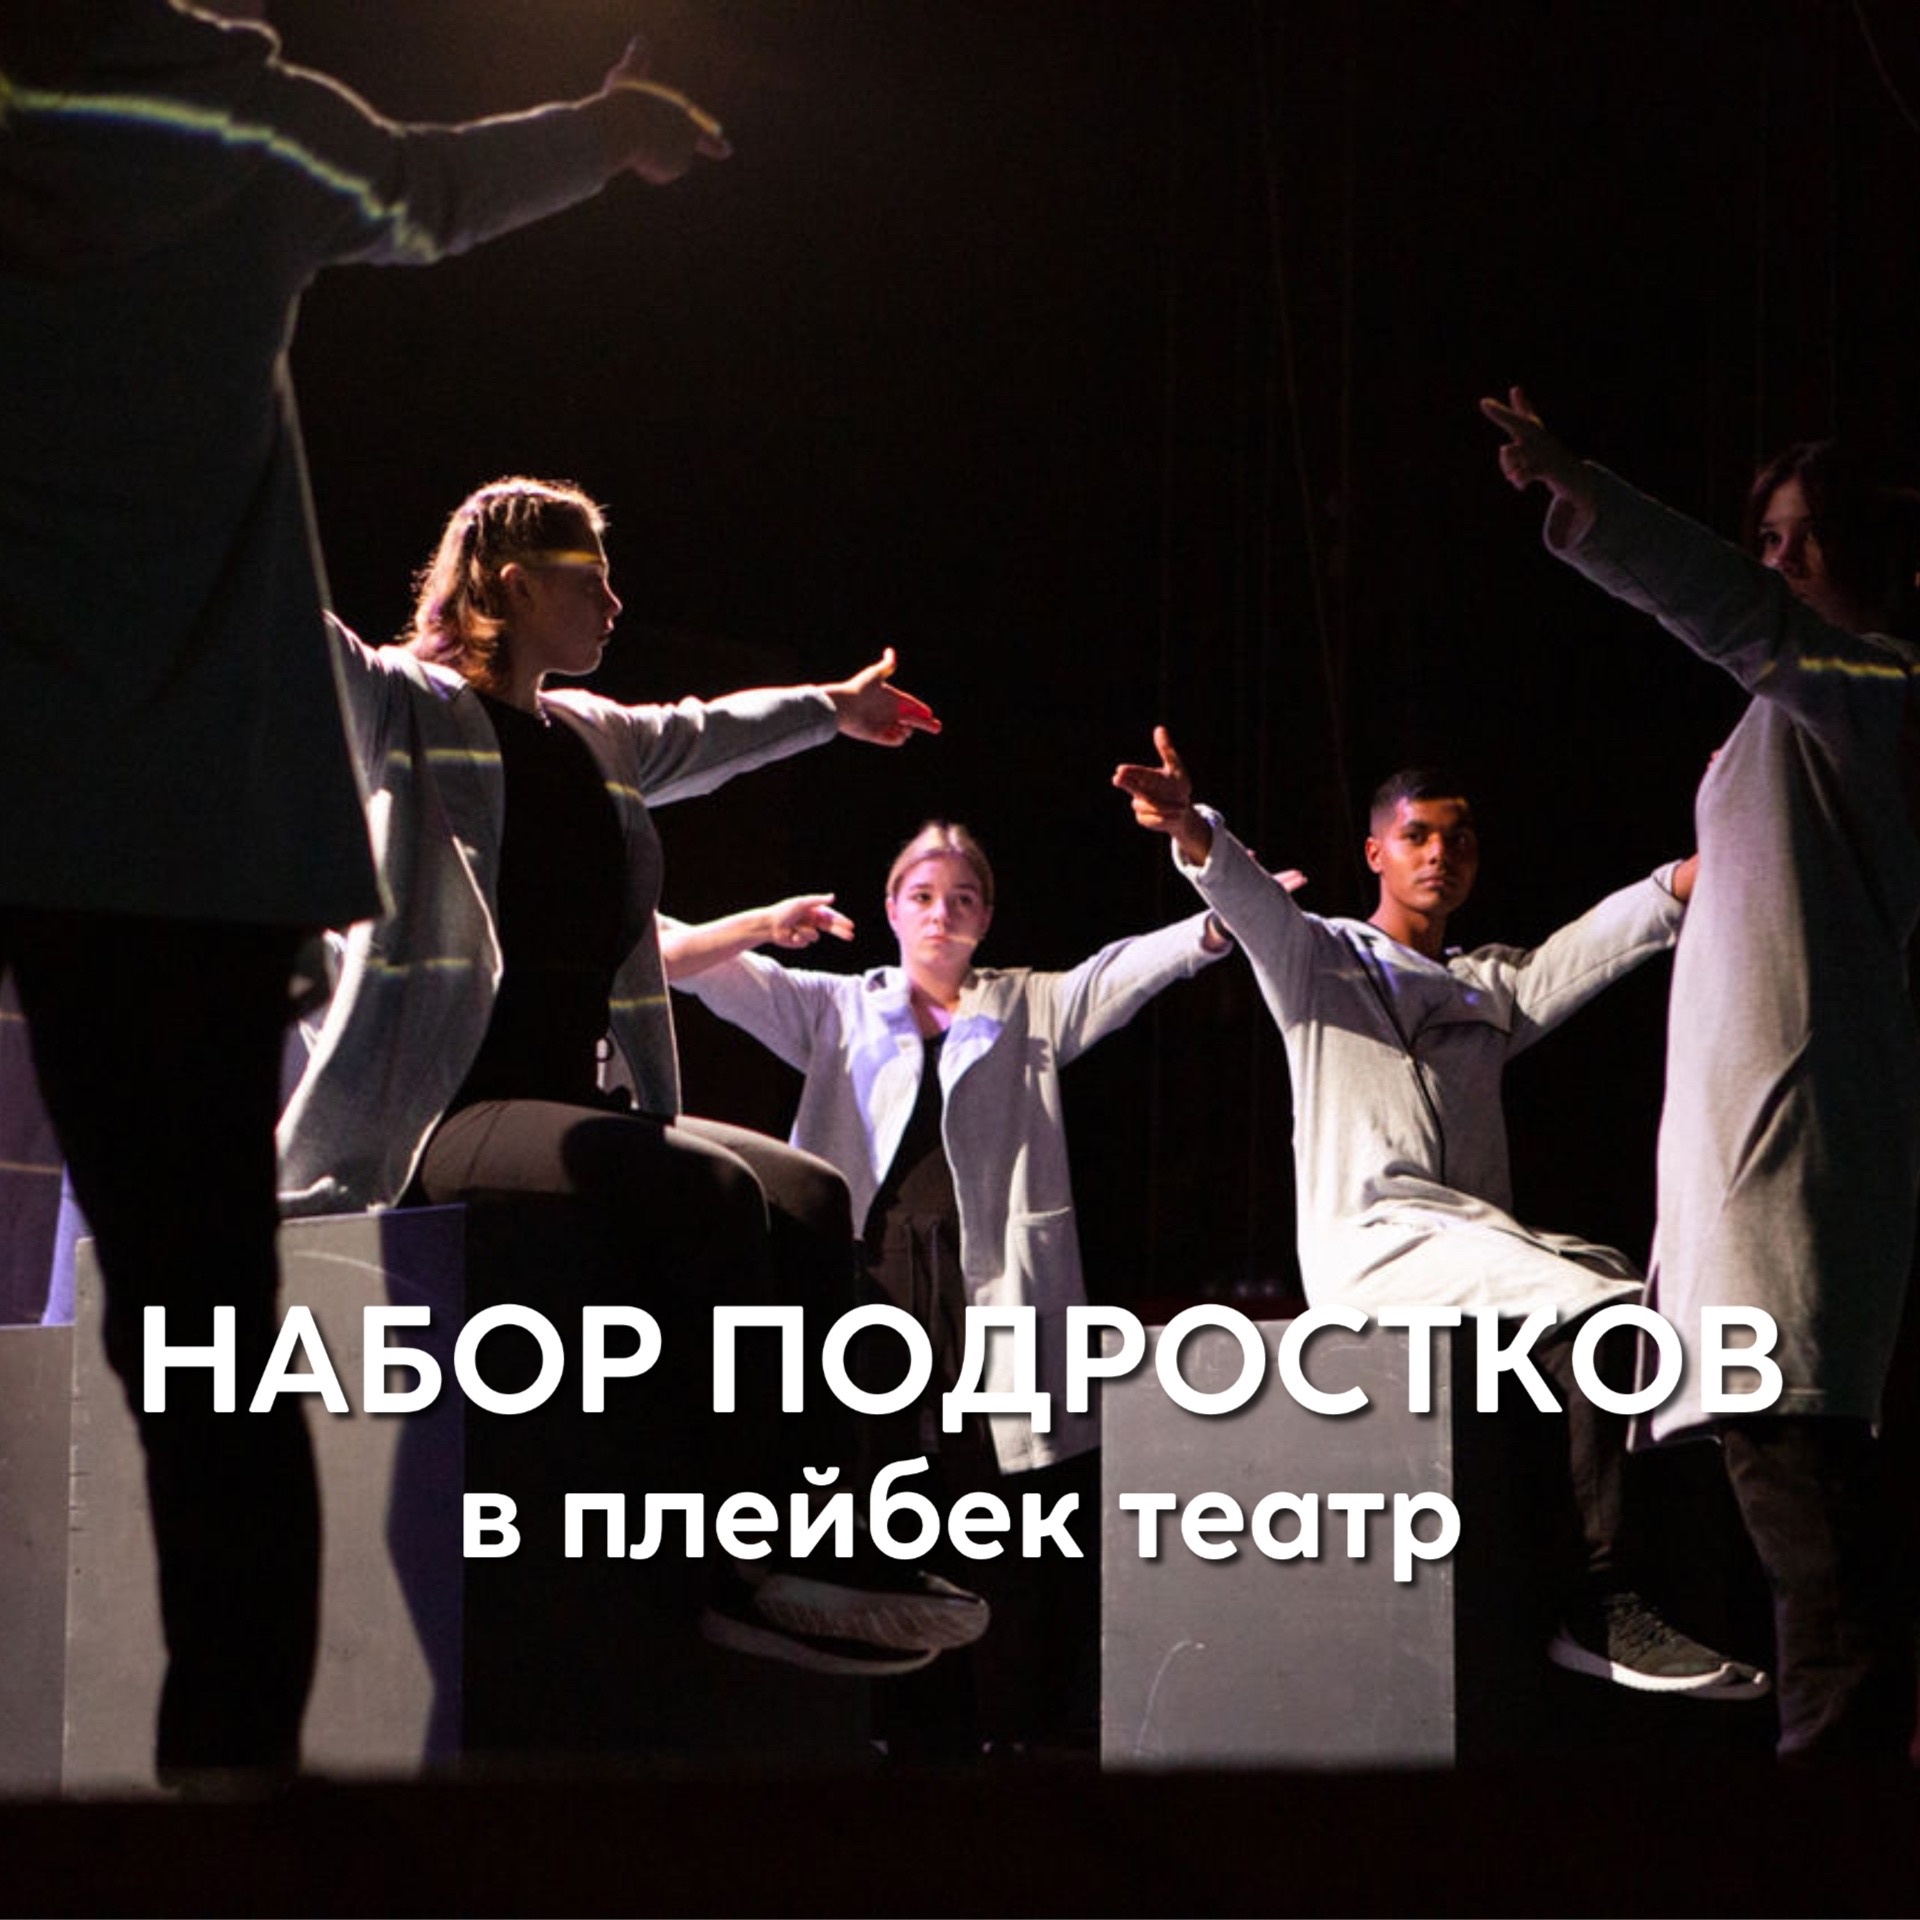 Плейбэк театр для подростков в Иваново